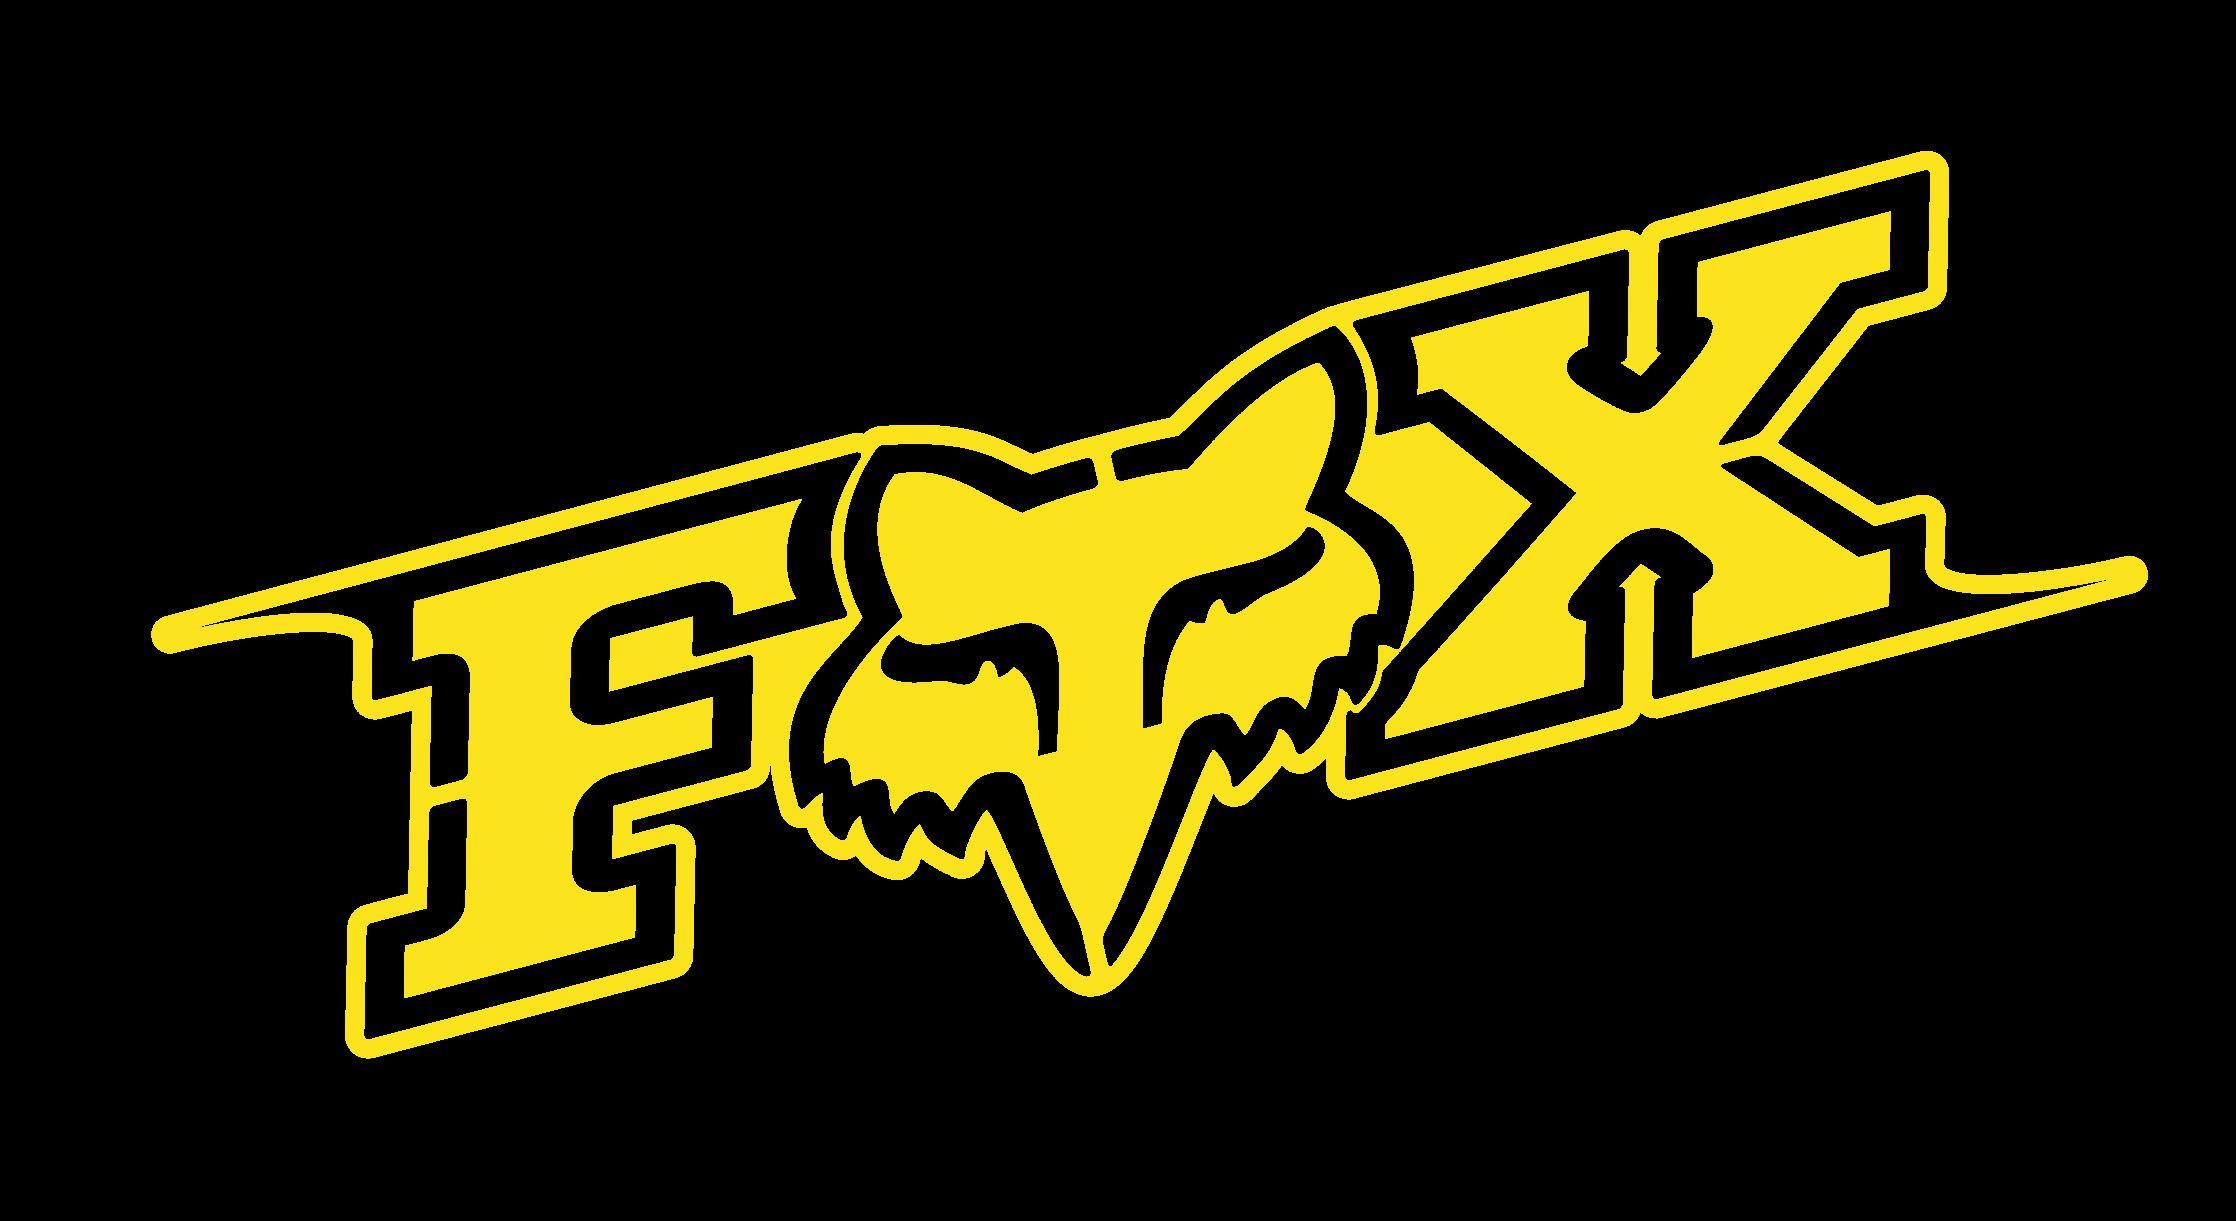 Fox Rider Logo - Fox Racing Logo Wallpaper ·①